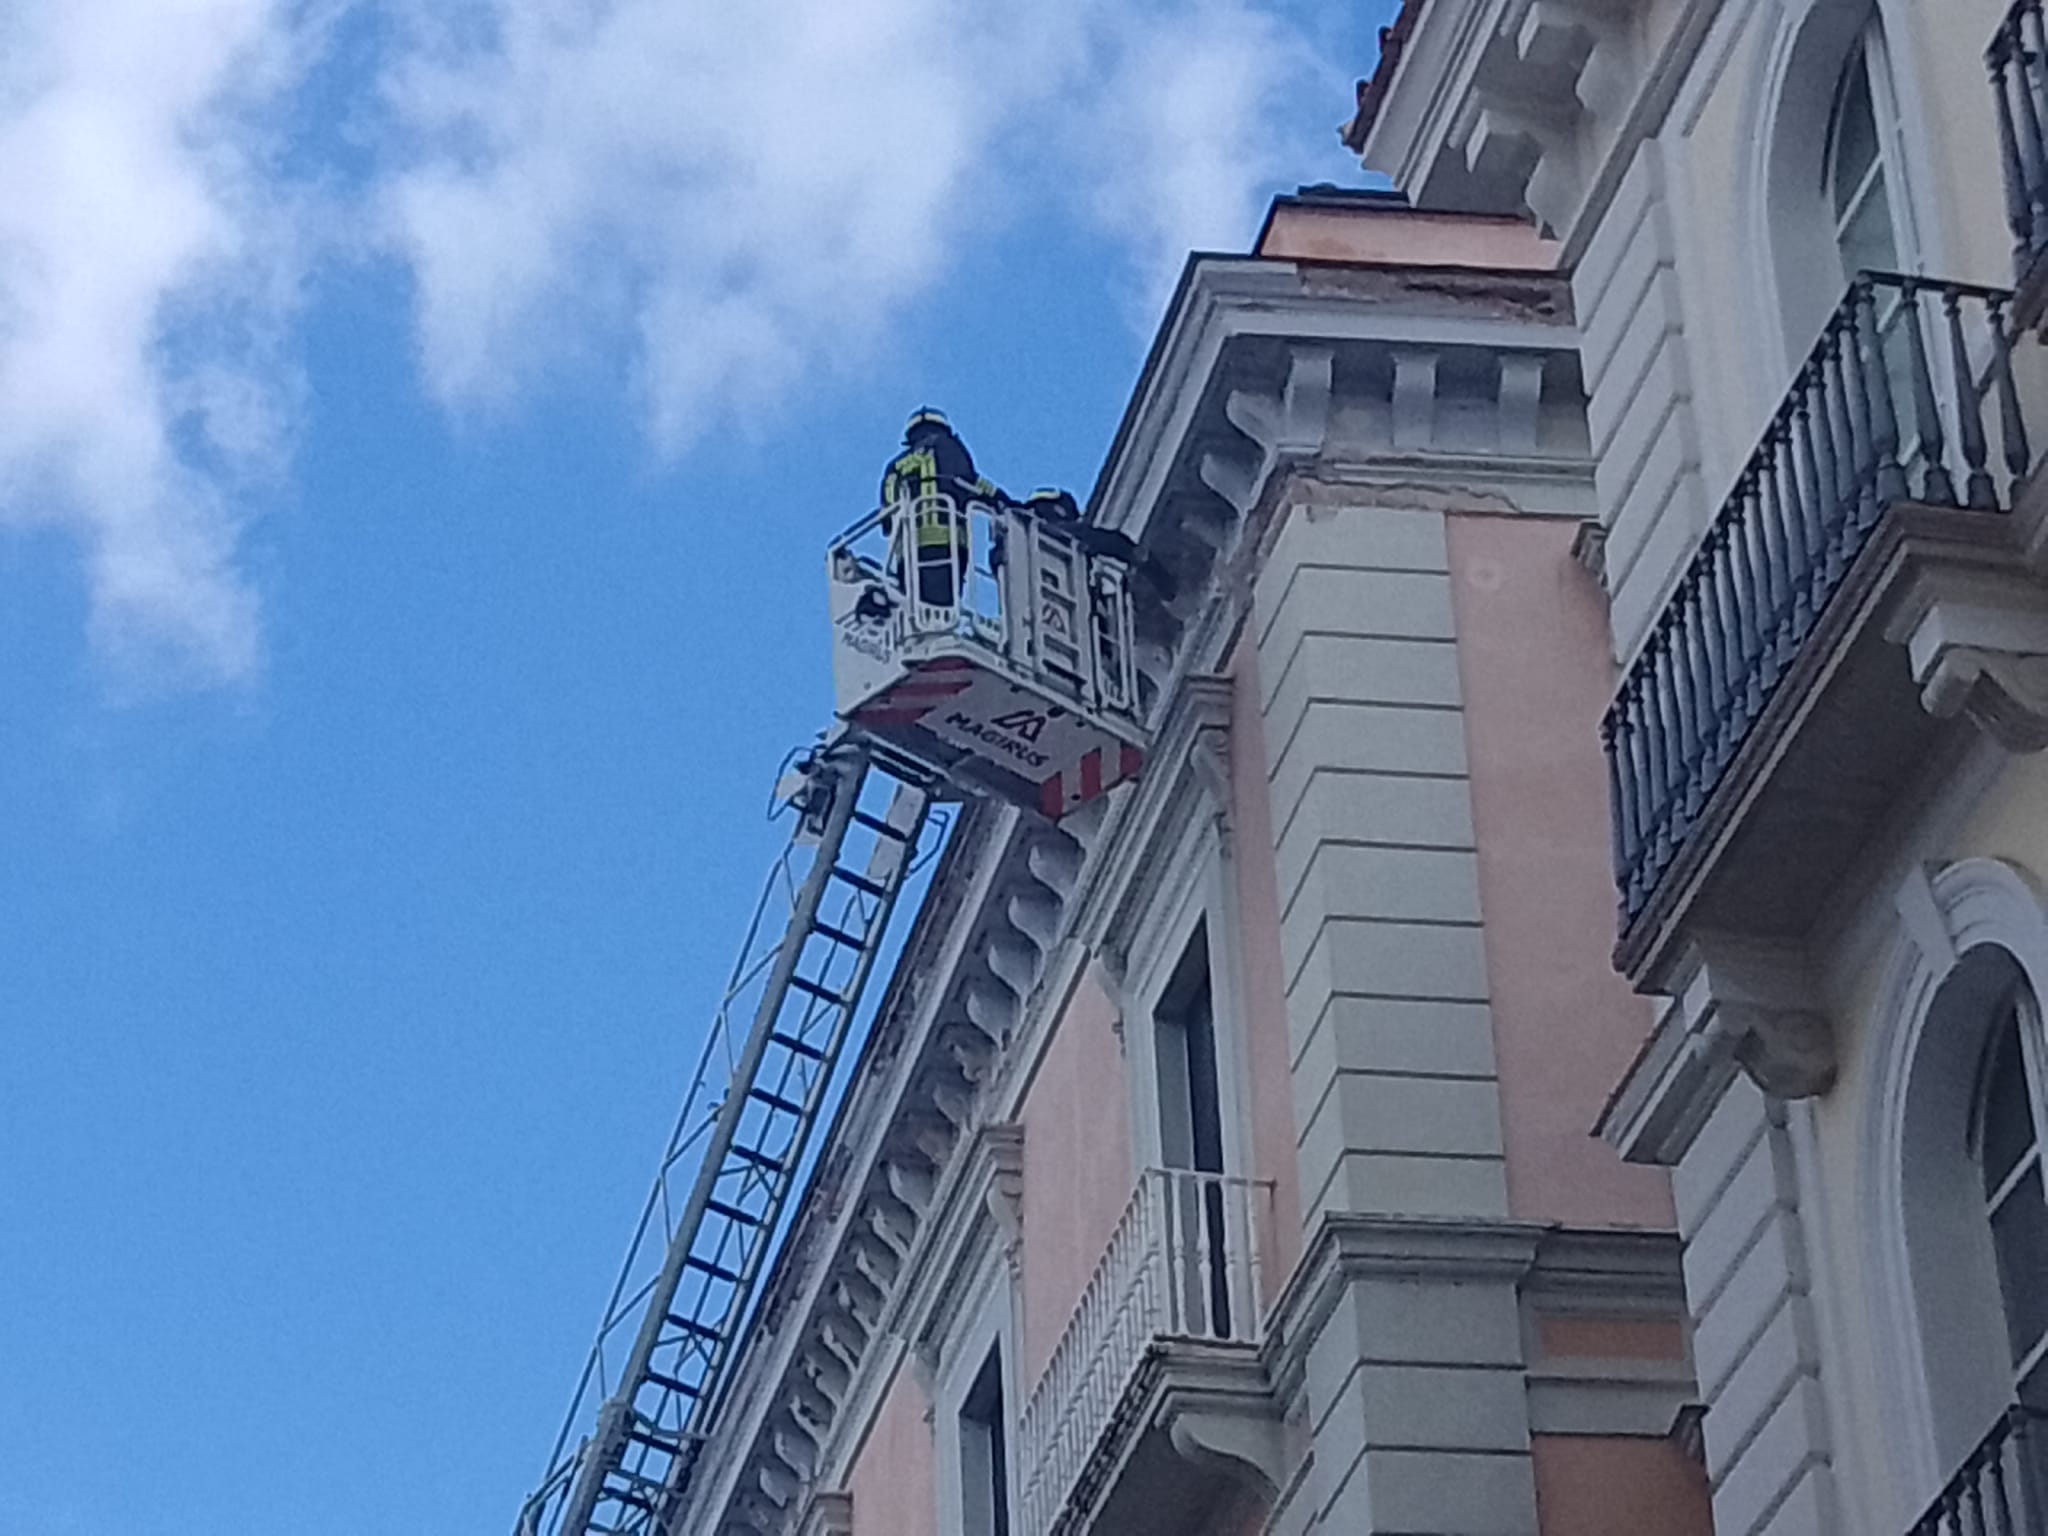 Calcinacci giù da un palazzo del Corso: pompieri transennano l’area